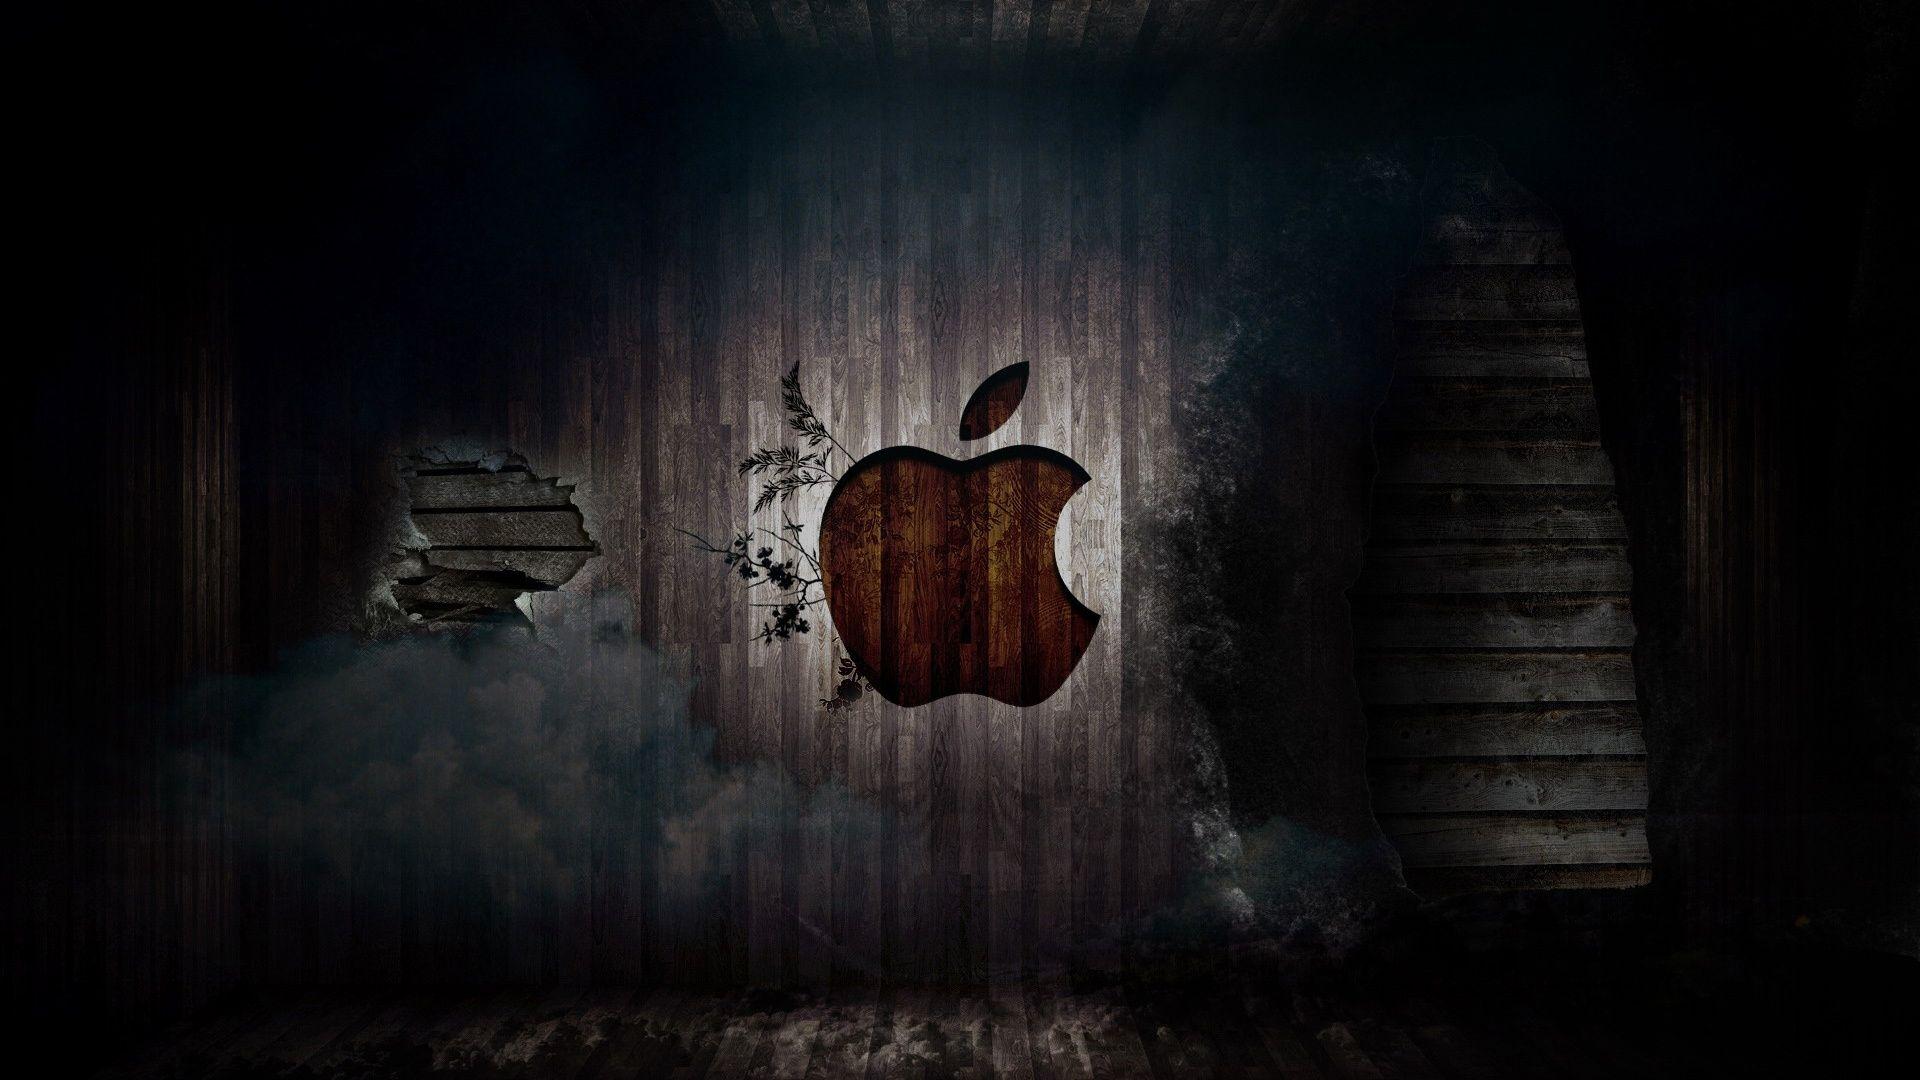 Apple Logo Wallpaper HD